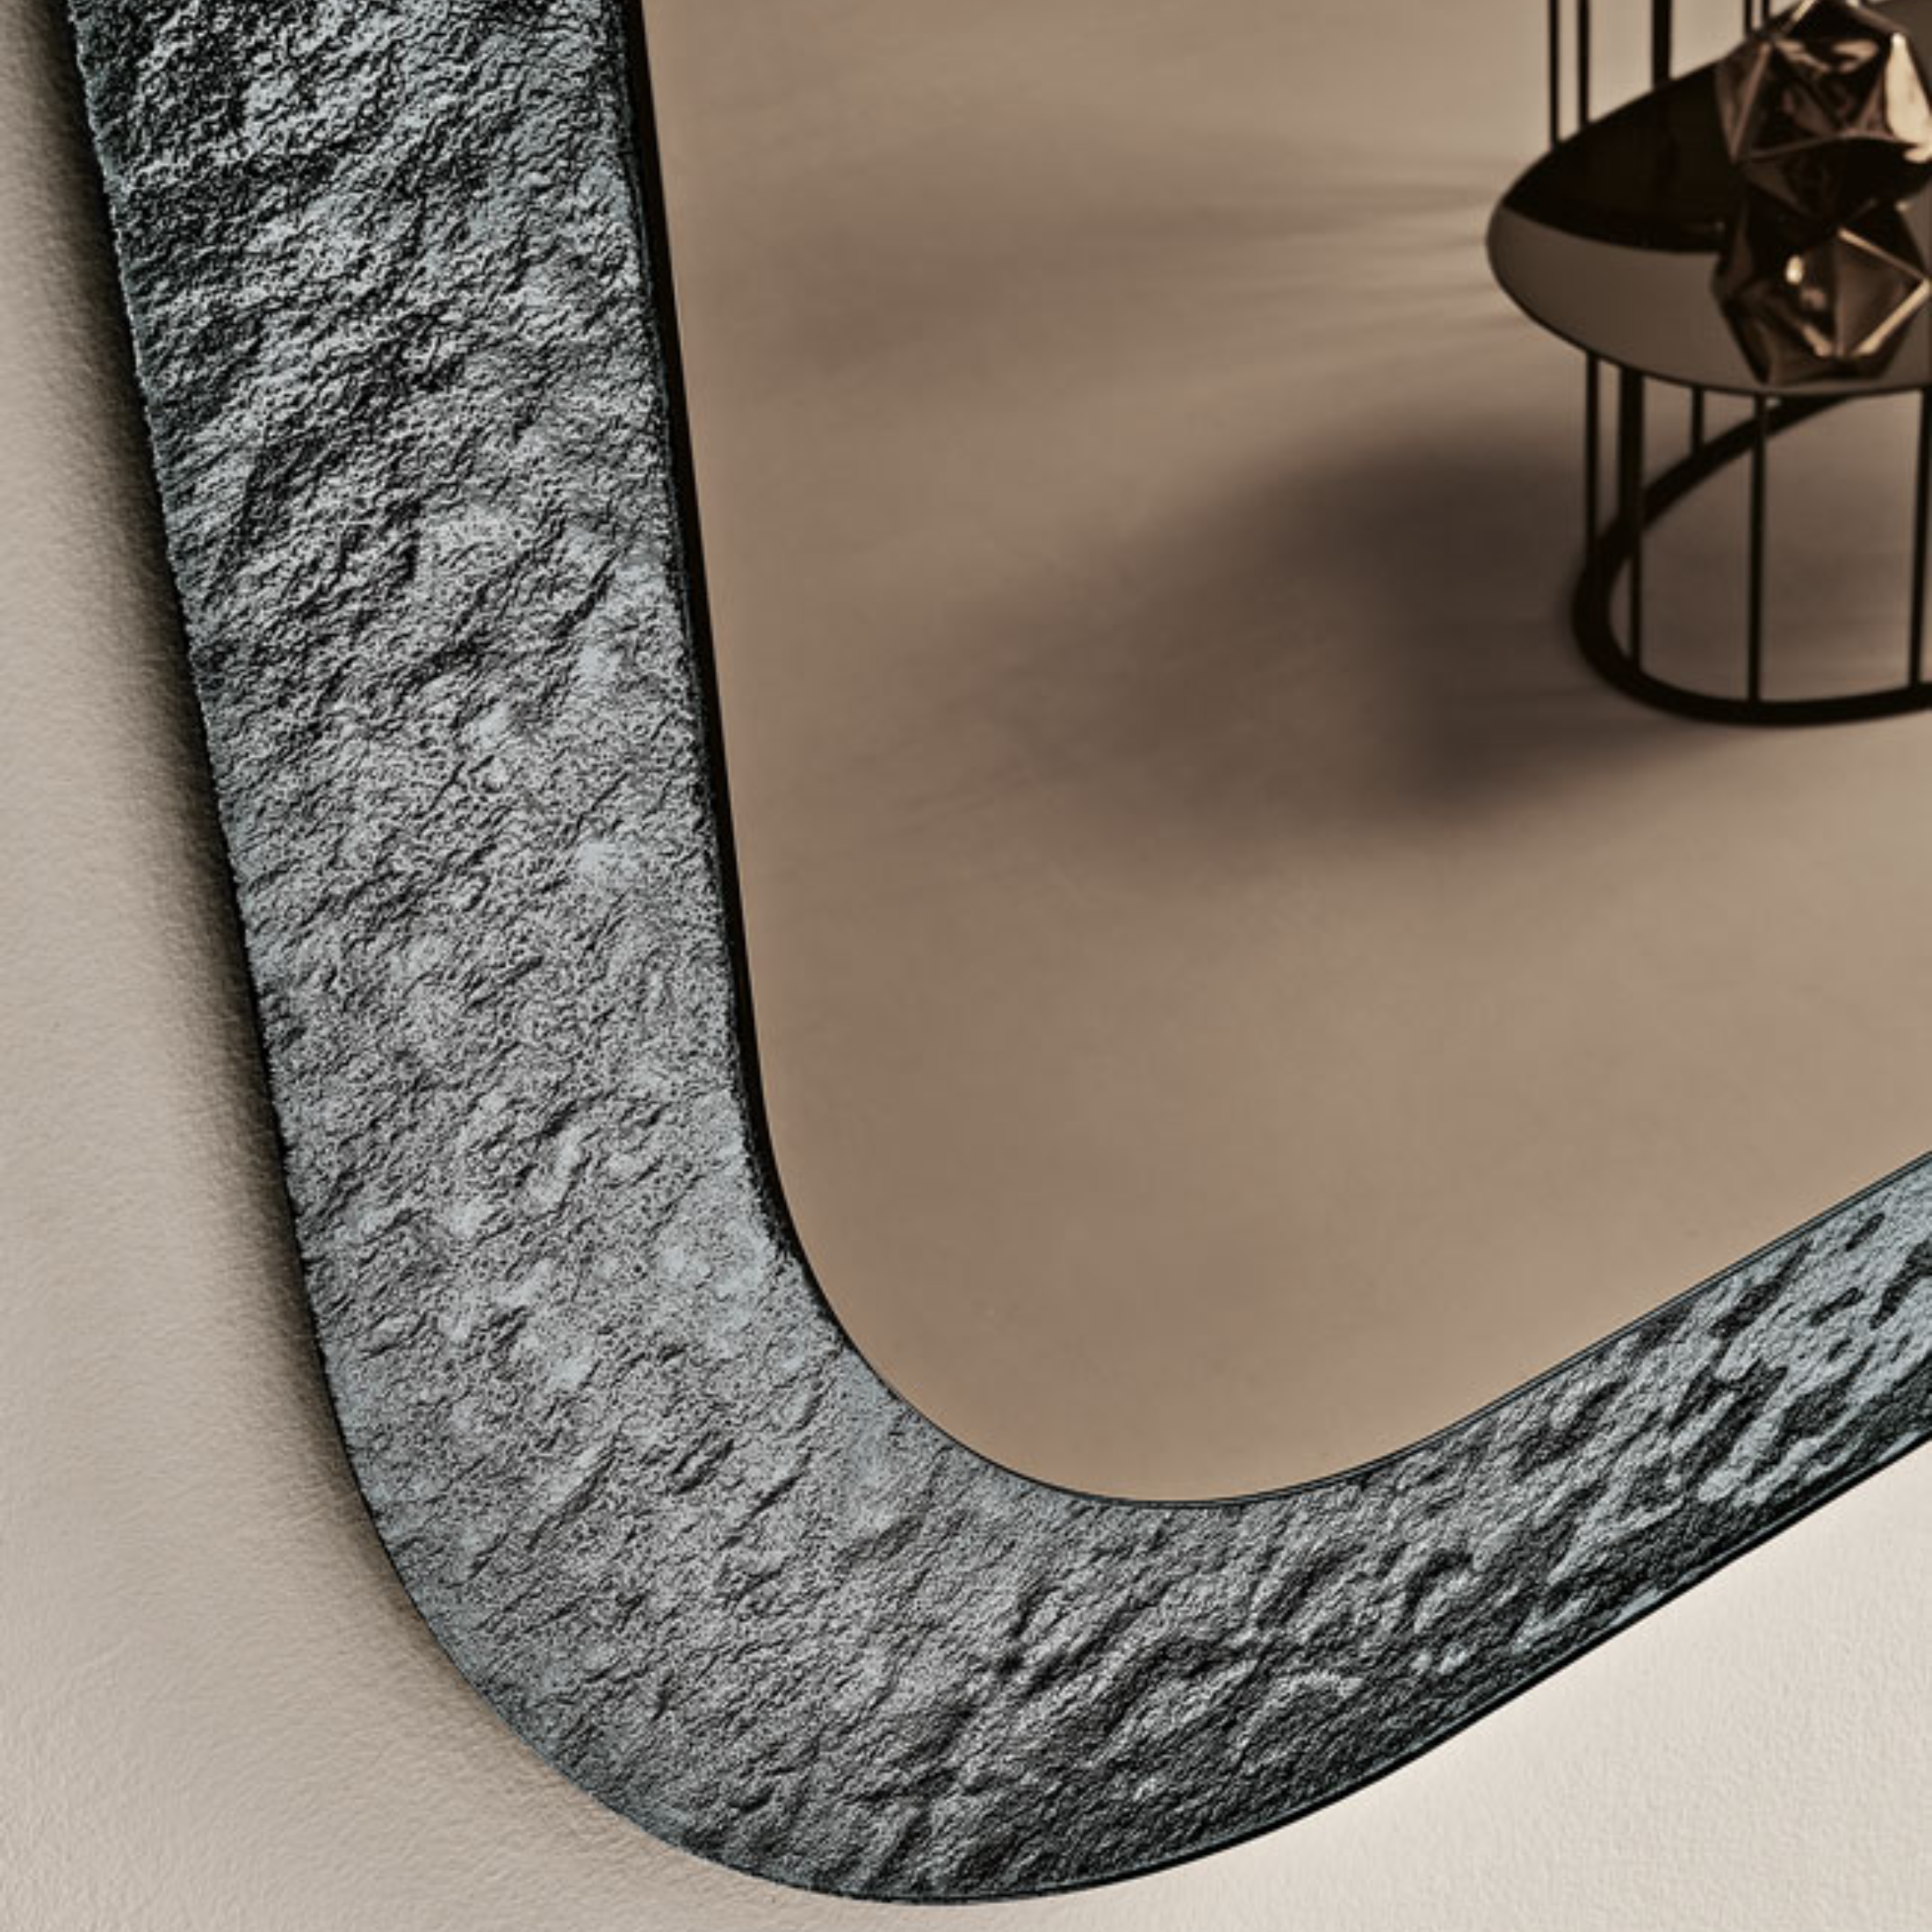 Espejo de pared en forma "Volta" con marco de cristal martillado 120x120h cm